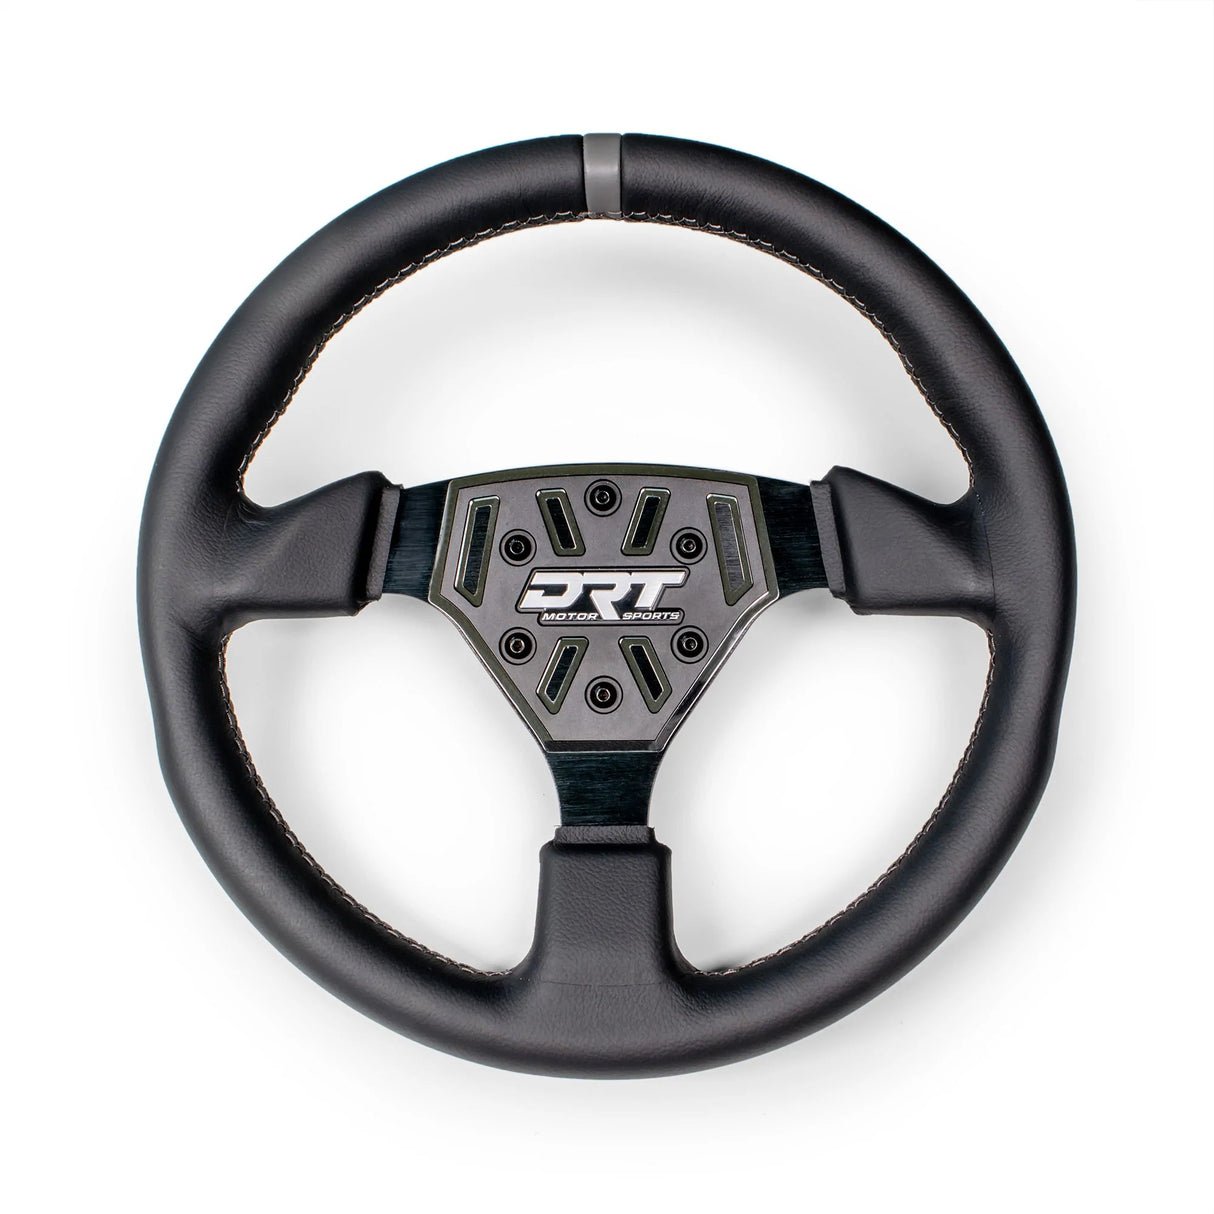 Round Steering Wheels - R1 Industries